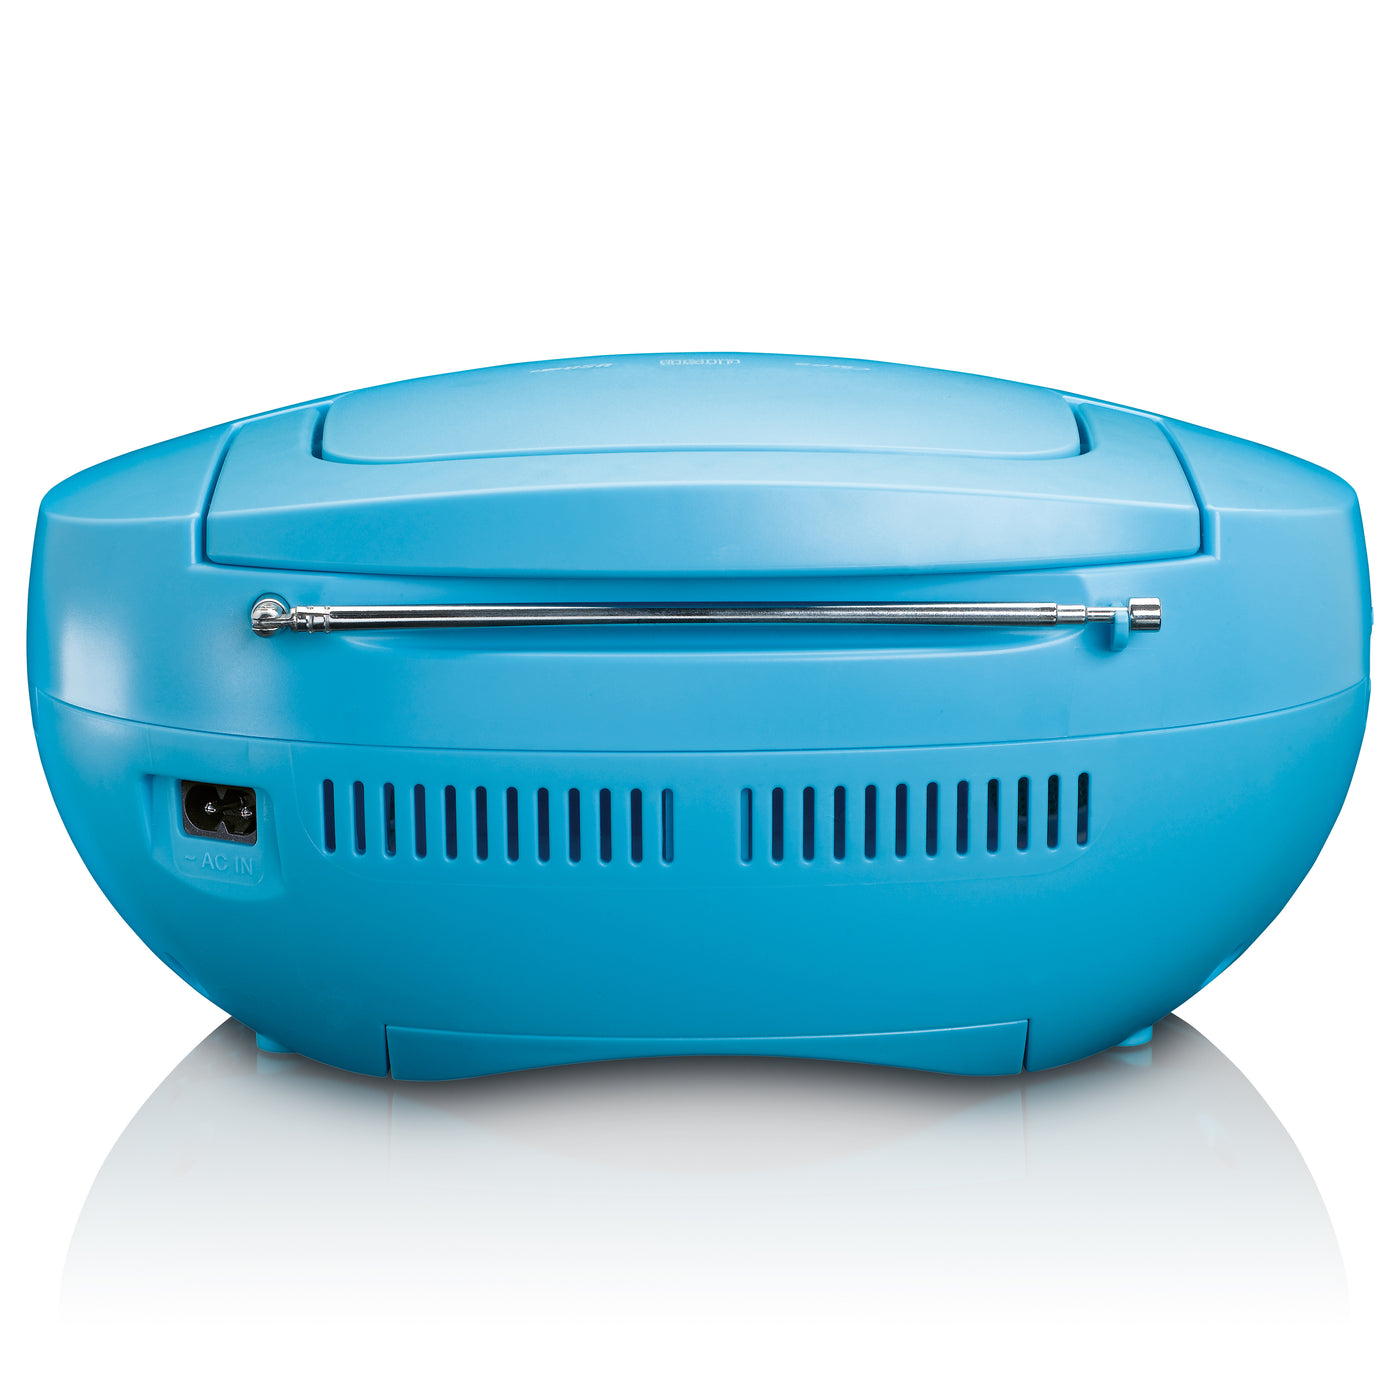 LENCO SCD-200BU - Radioodtwarzacz CD z funkcją MP3 i USB - Niebieski